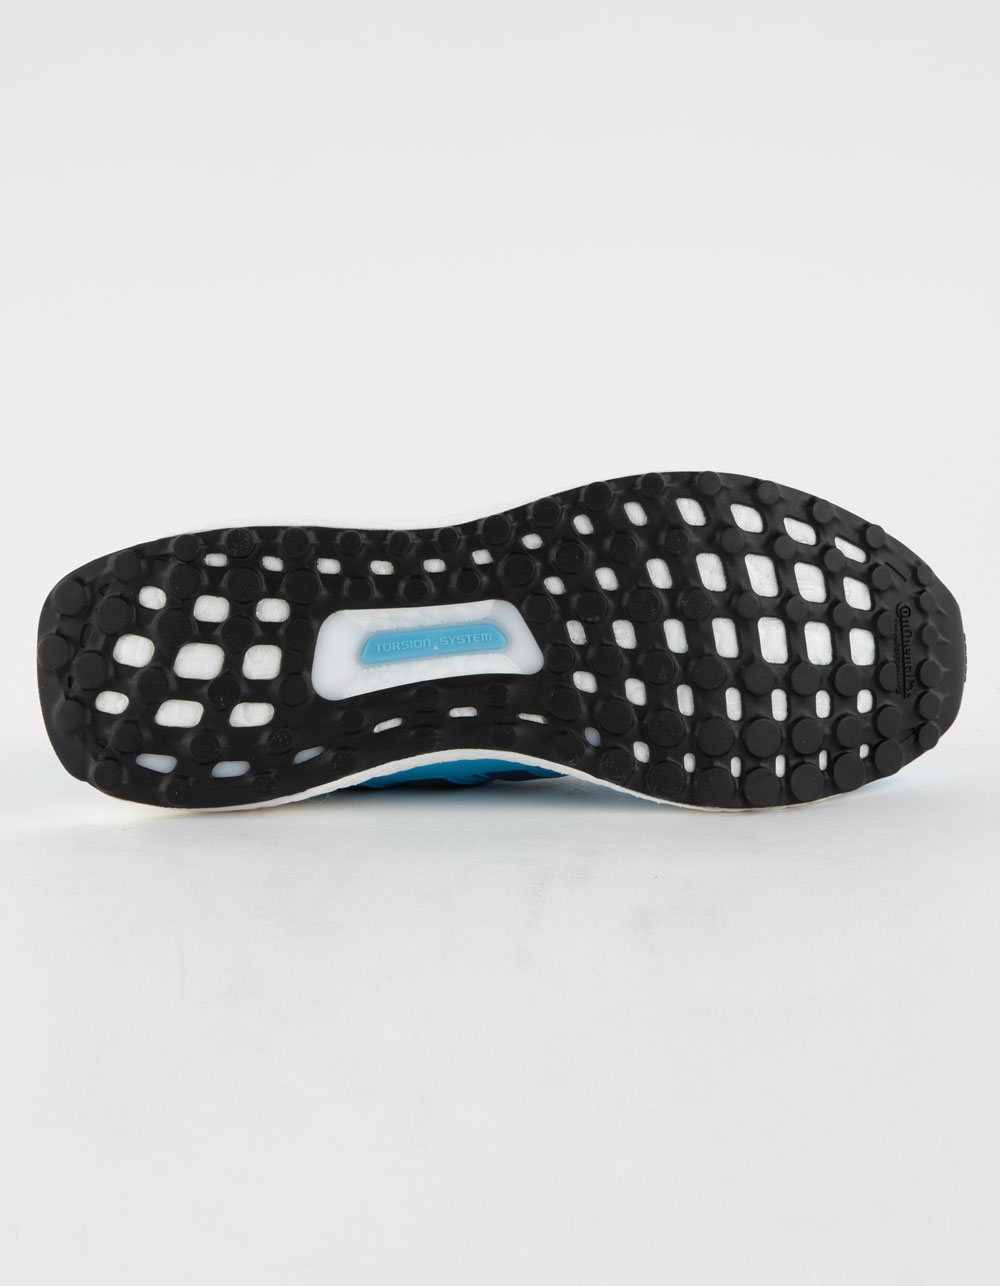 ADIDAS Ultraboost 1.0 Mens Shoes - LIGHT BLUE | Tillys